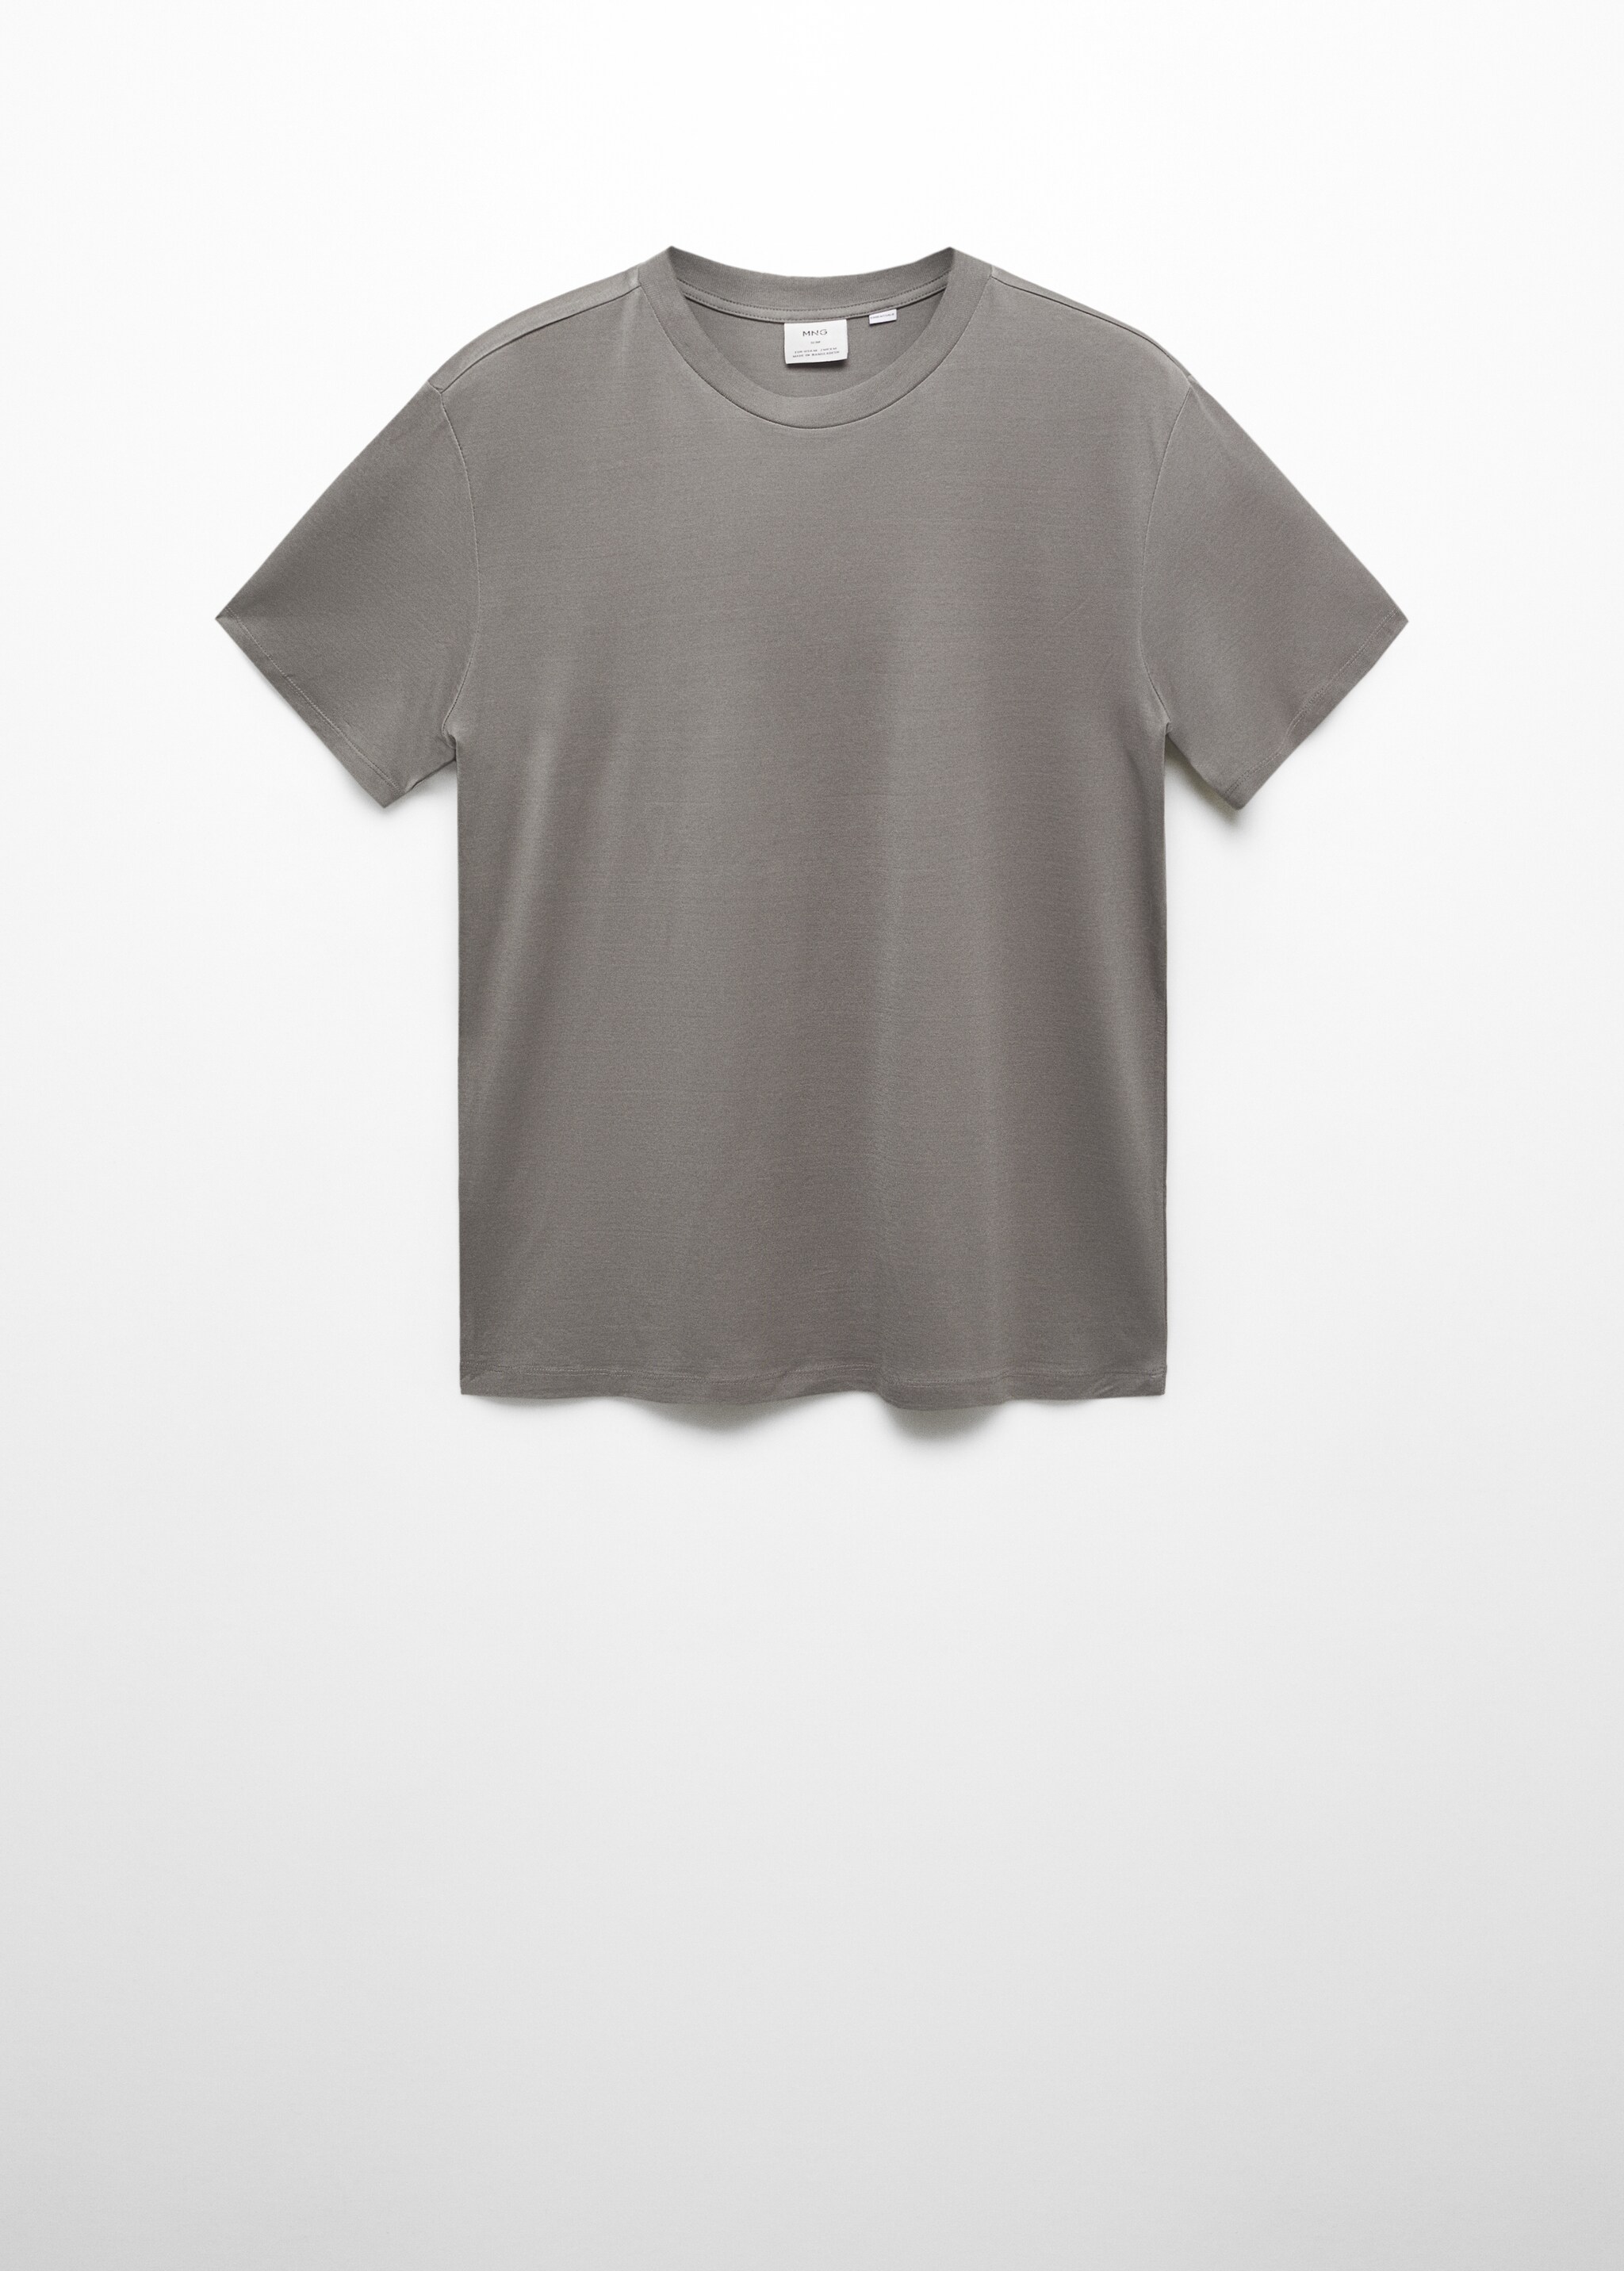 Мерсеризованная футболка slim fit - Изделие без модели